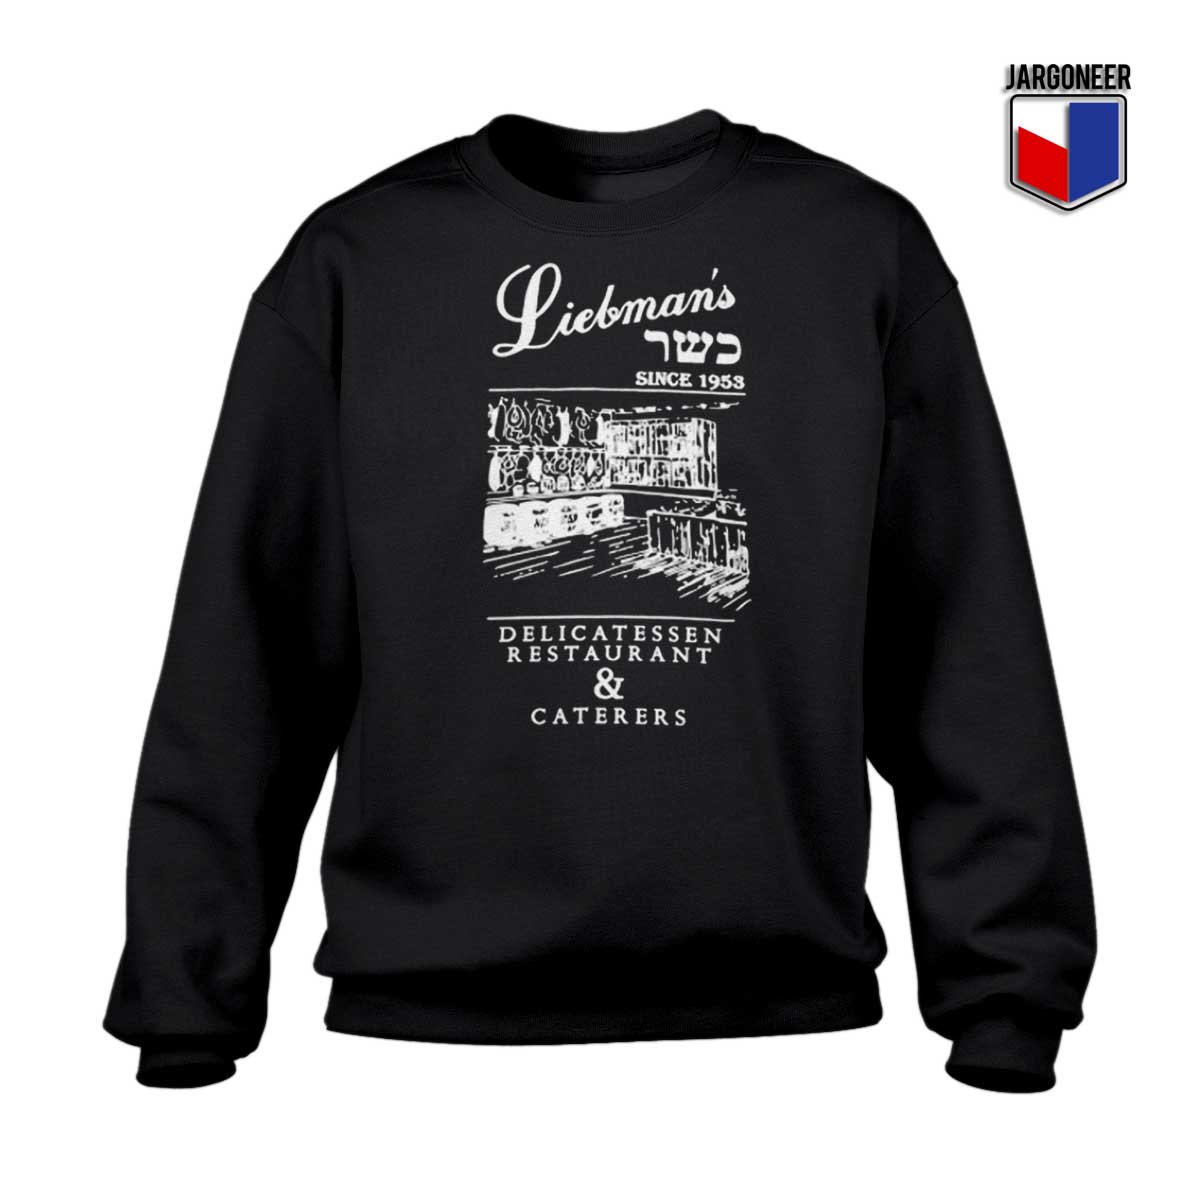 Liebmans Deli Sweatshirt - Shop Unique Graphic Cool Shirt Designs